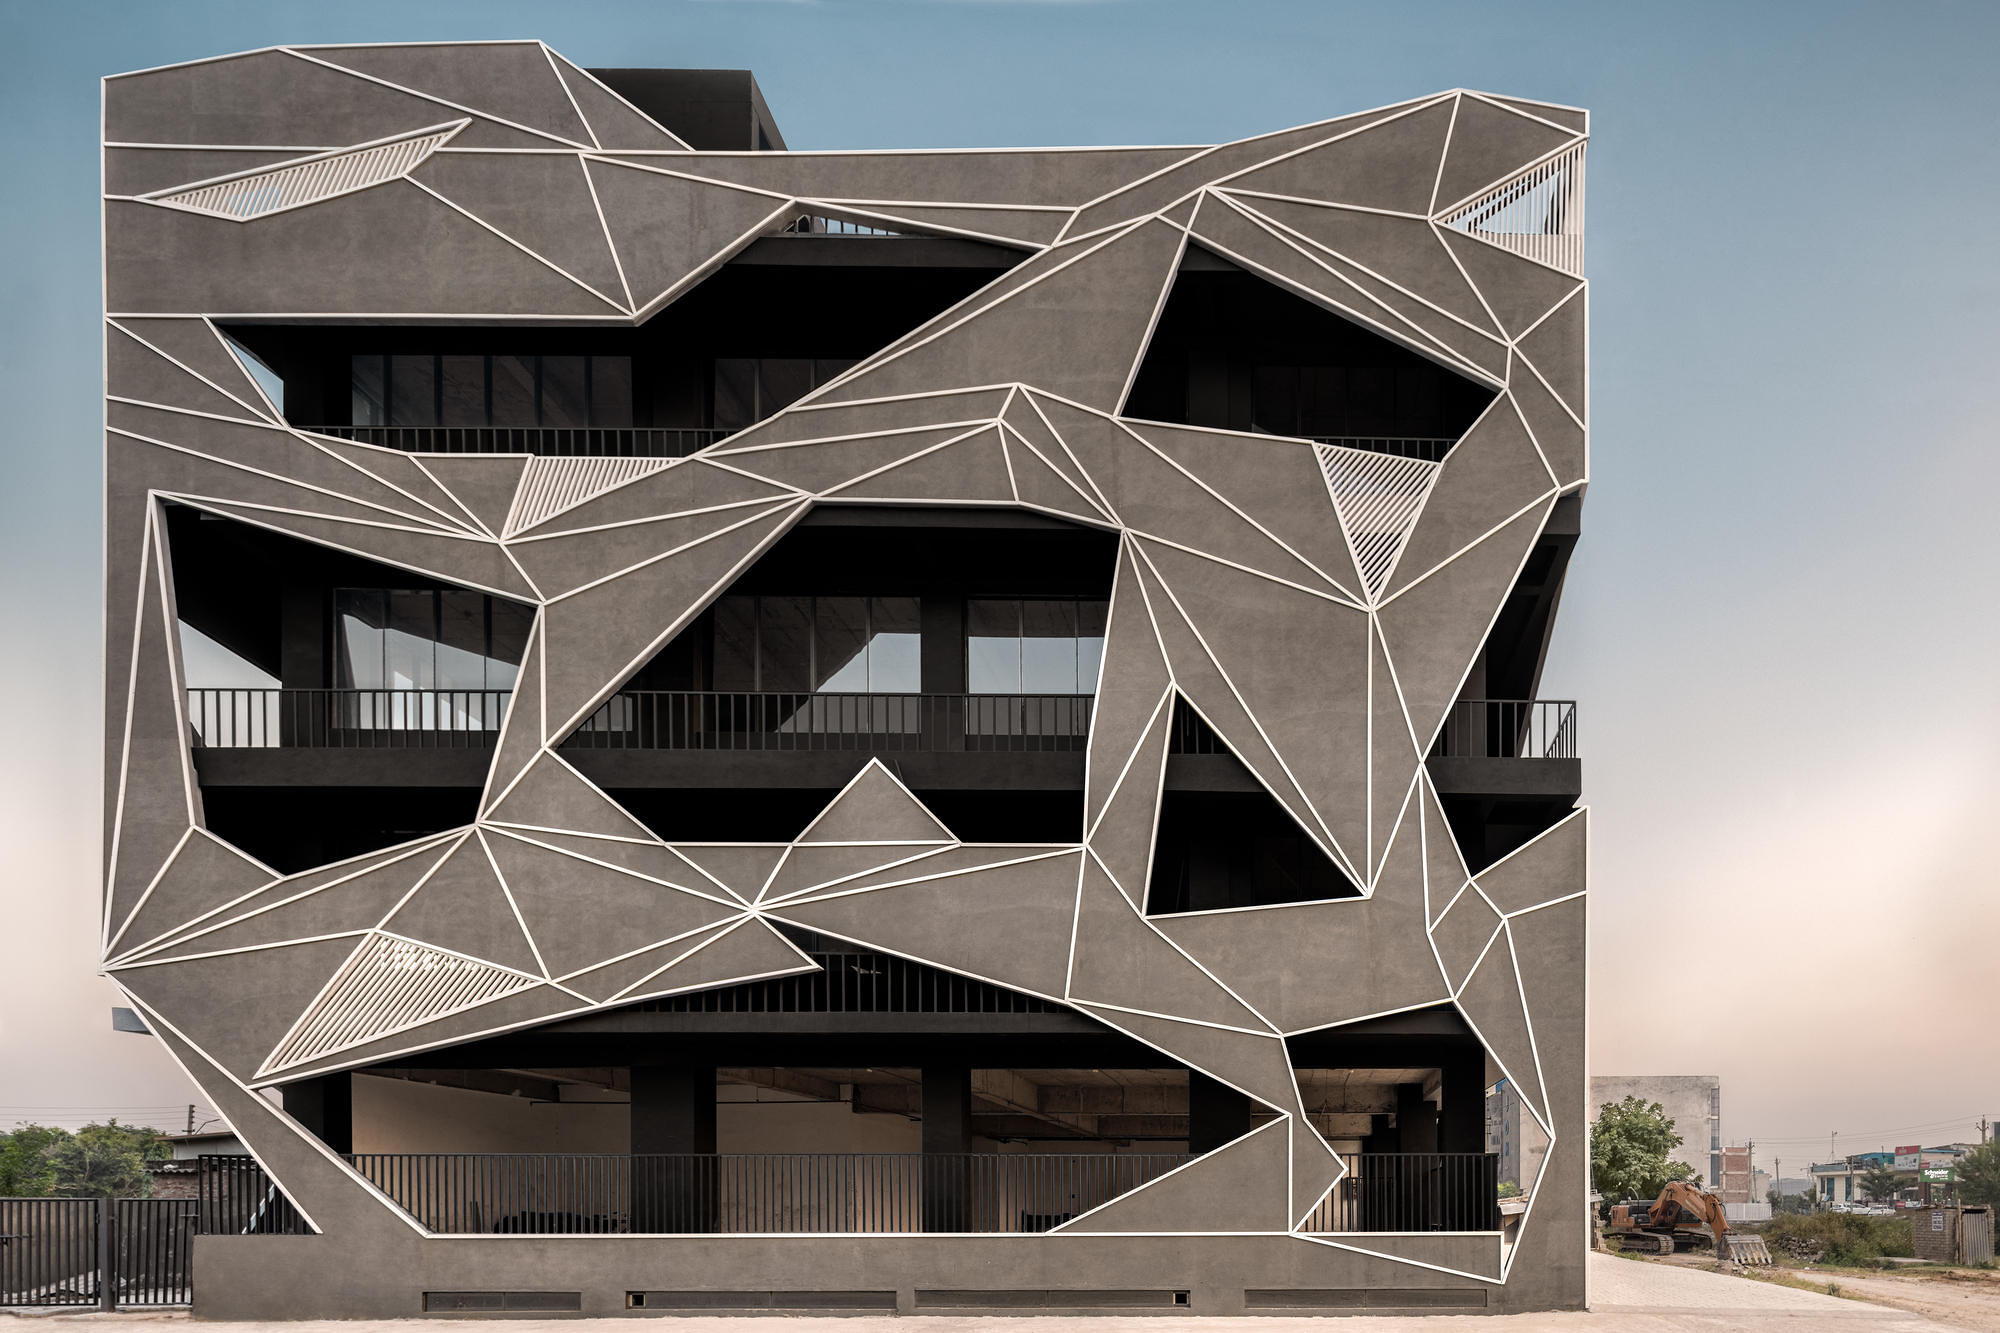 Industrial designs on contemporary facades